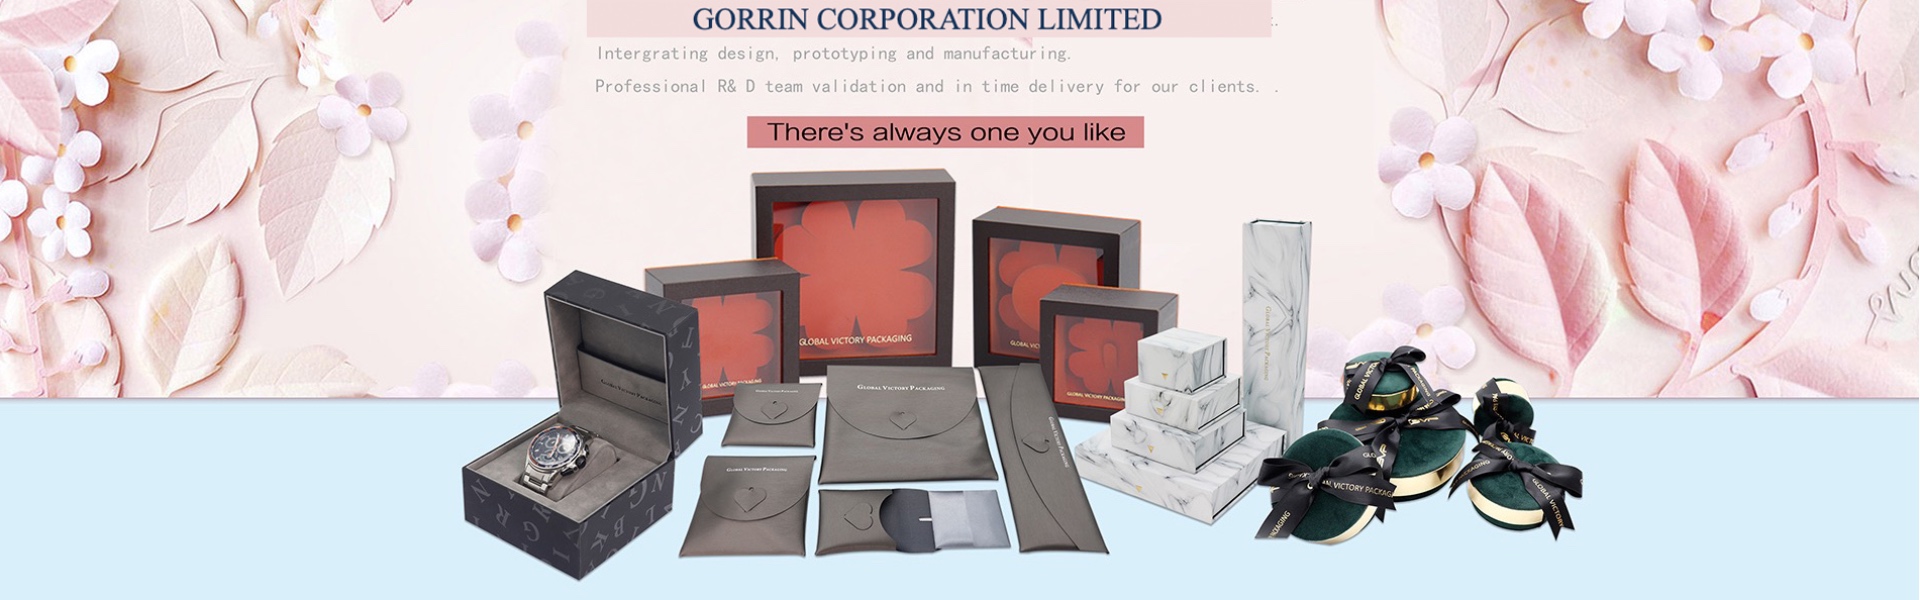 papieren doos, juwelen, juwelendoos,Gorrin corporation limited